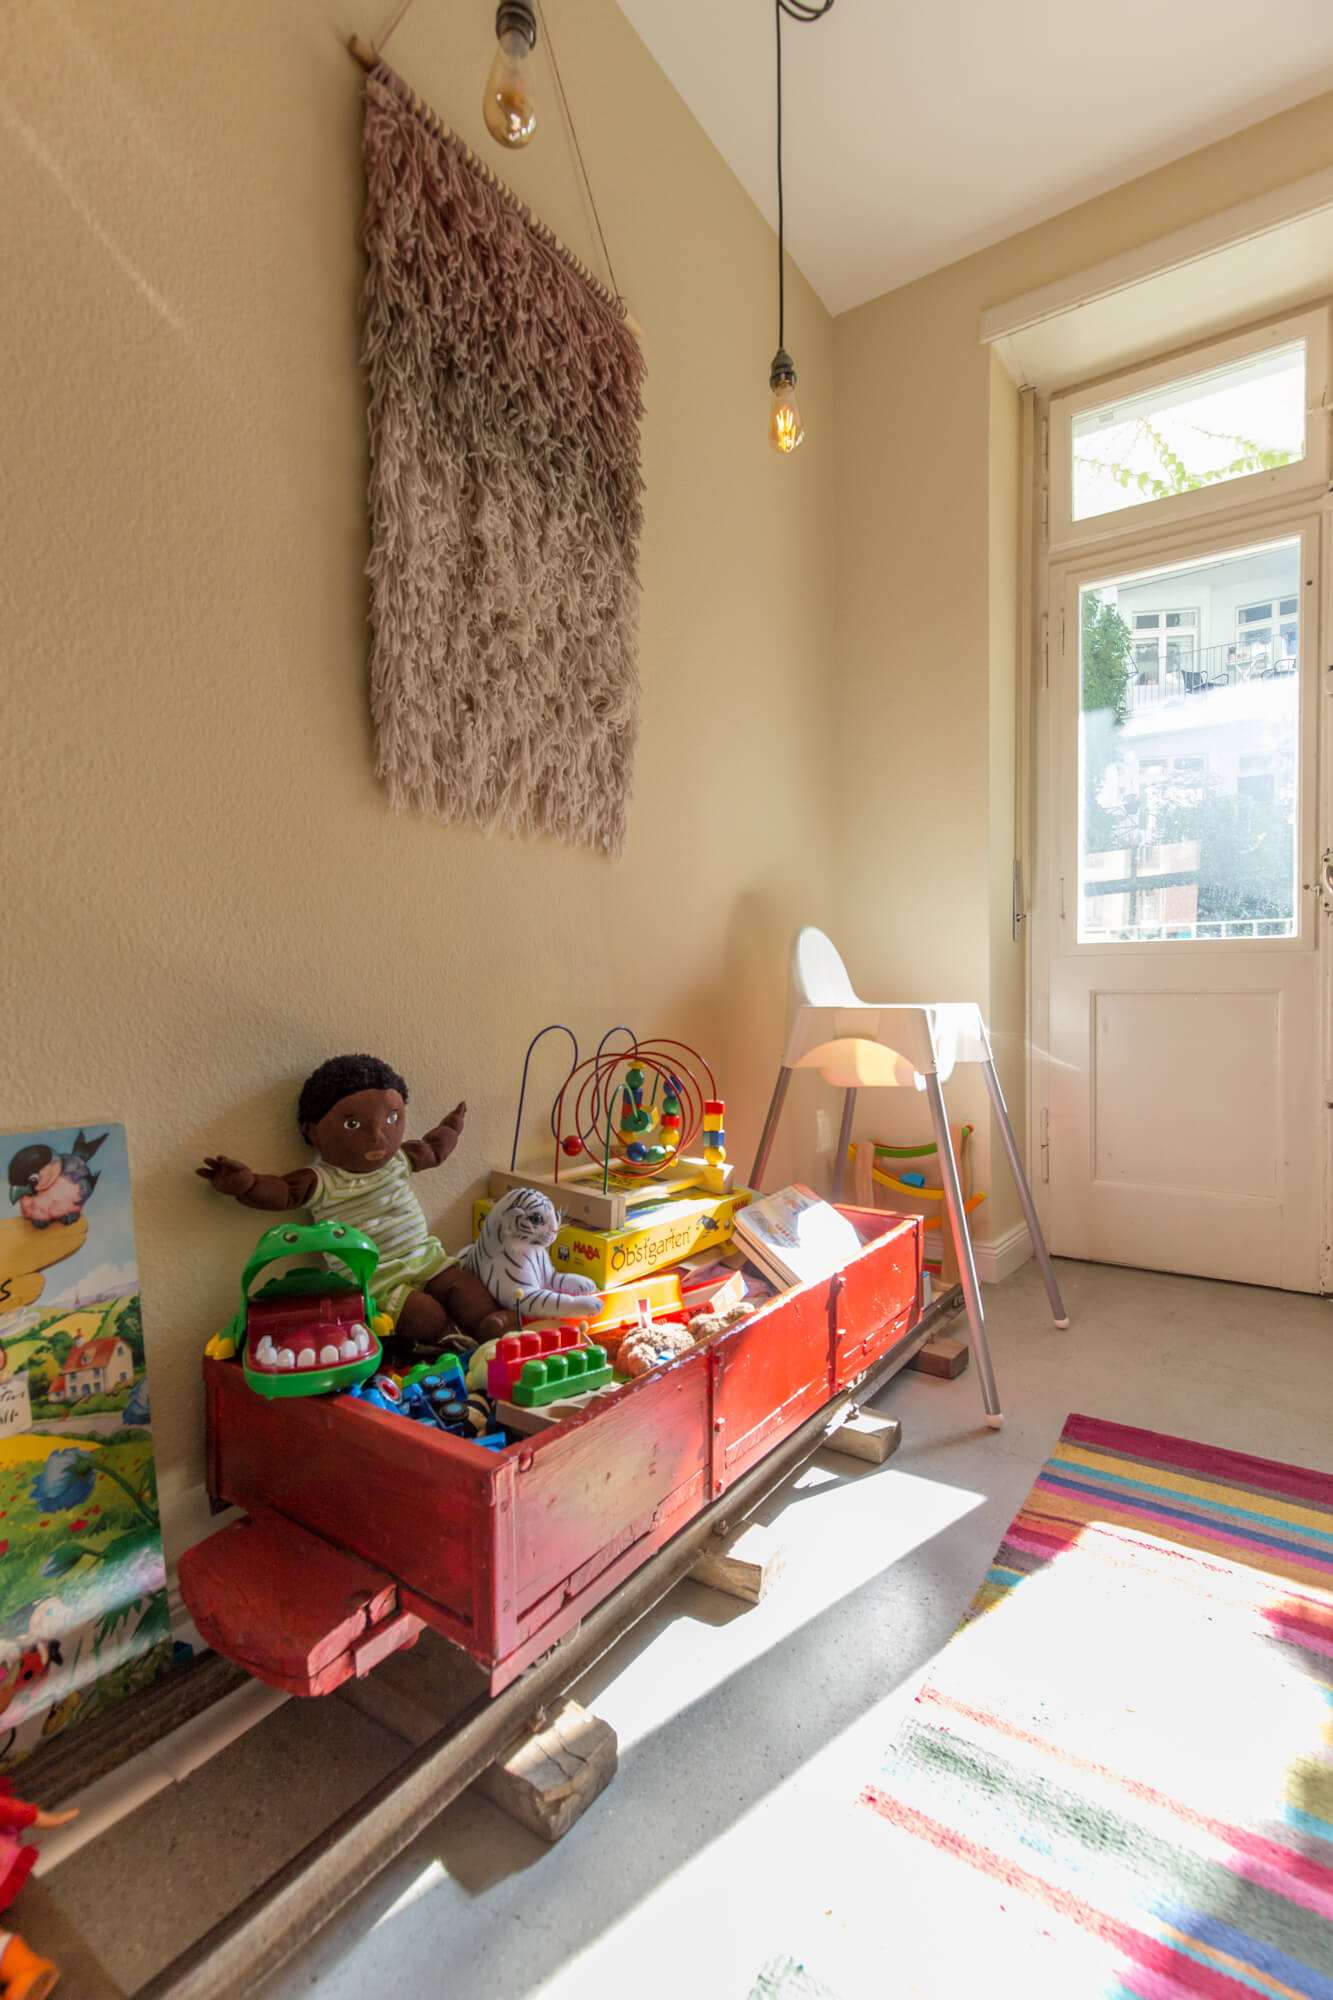 Kinderzimmer mit Spielzeug und Puppen